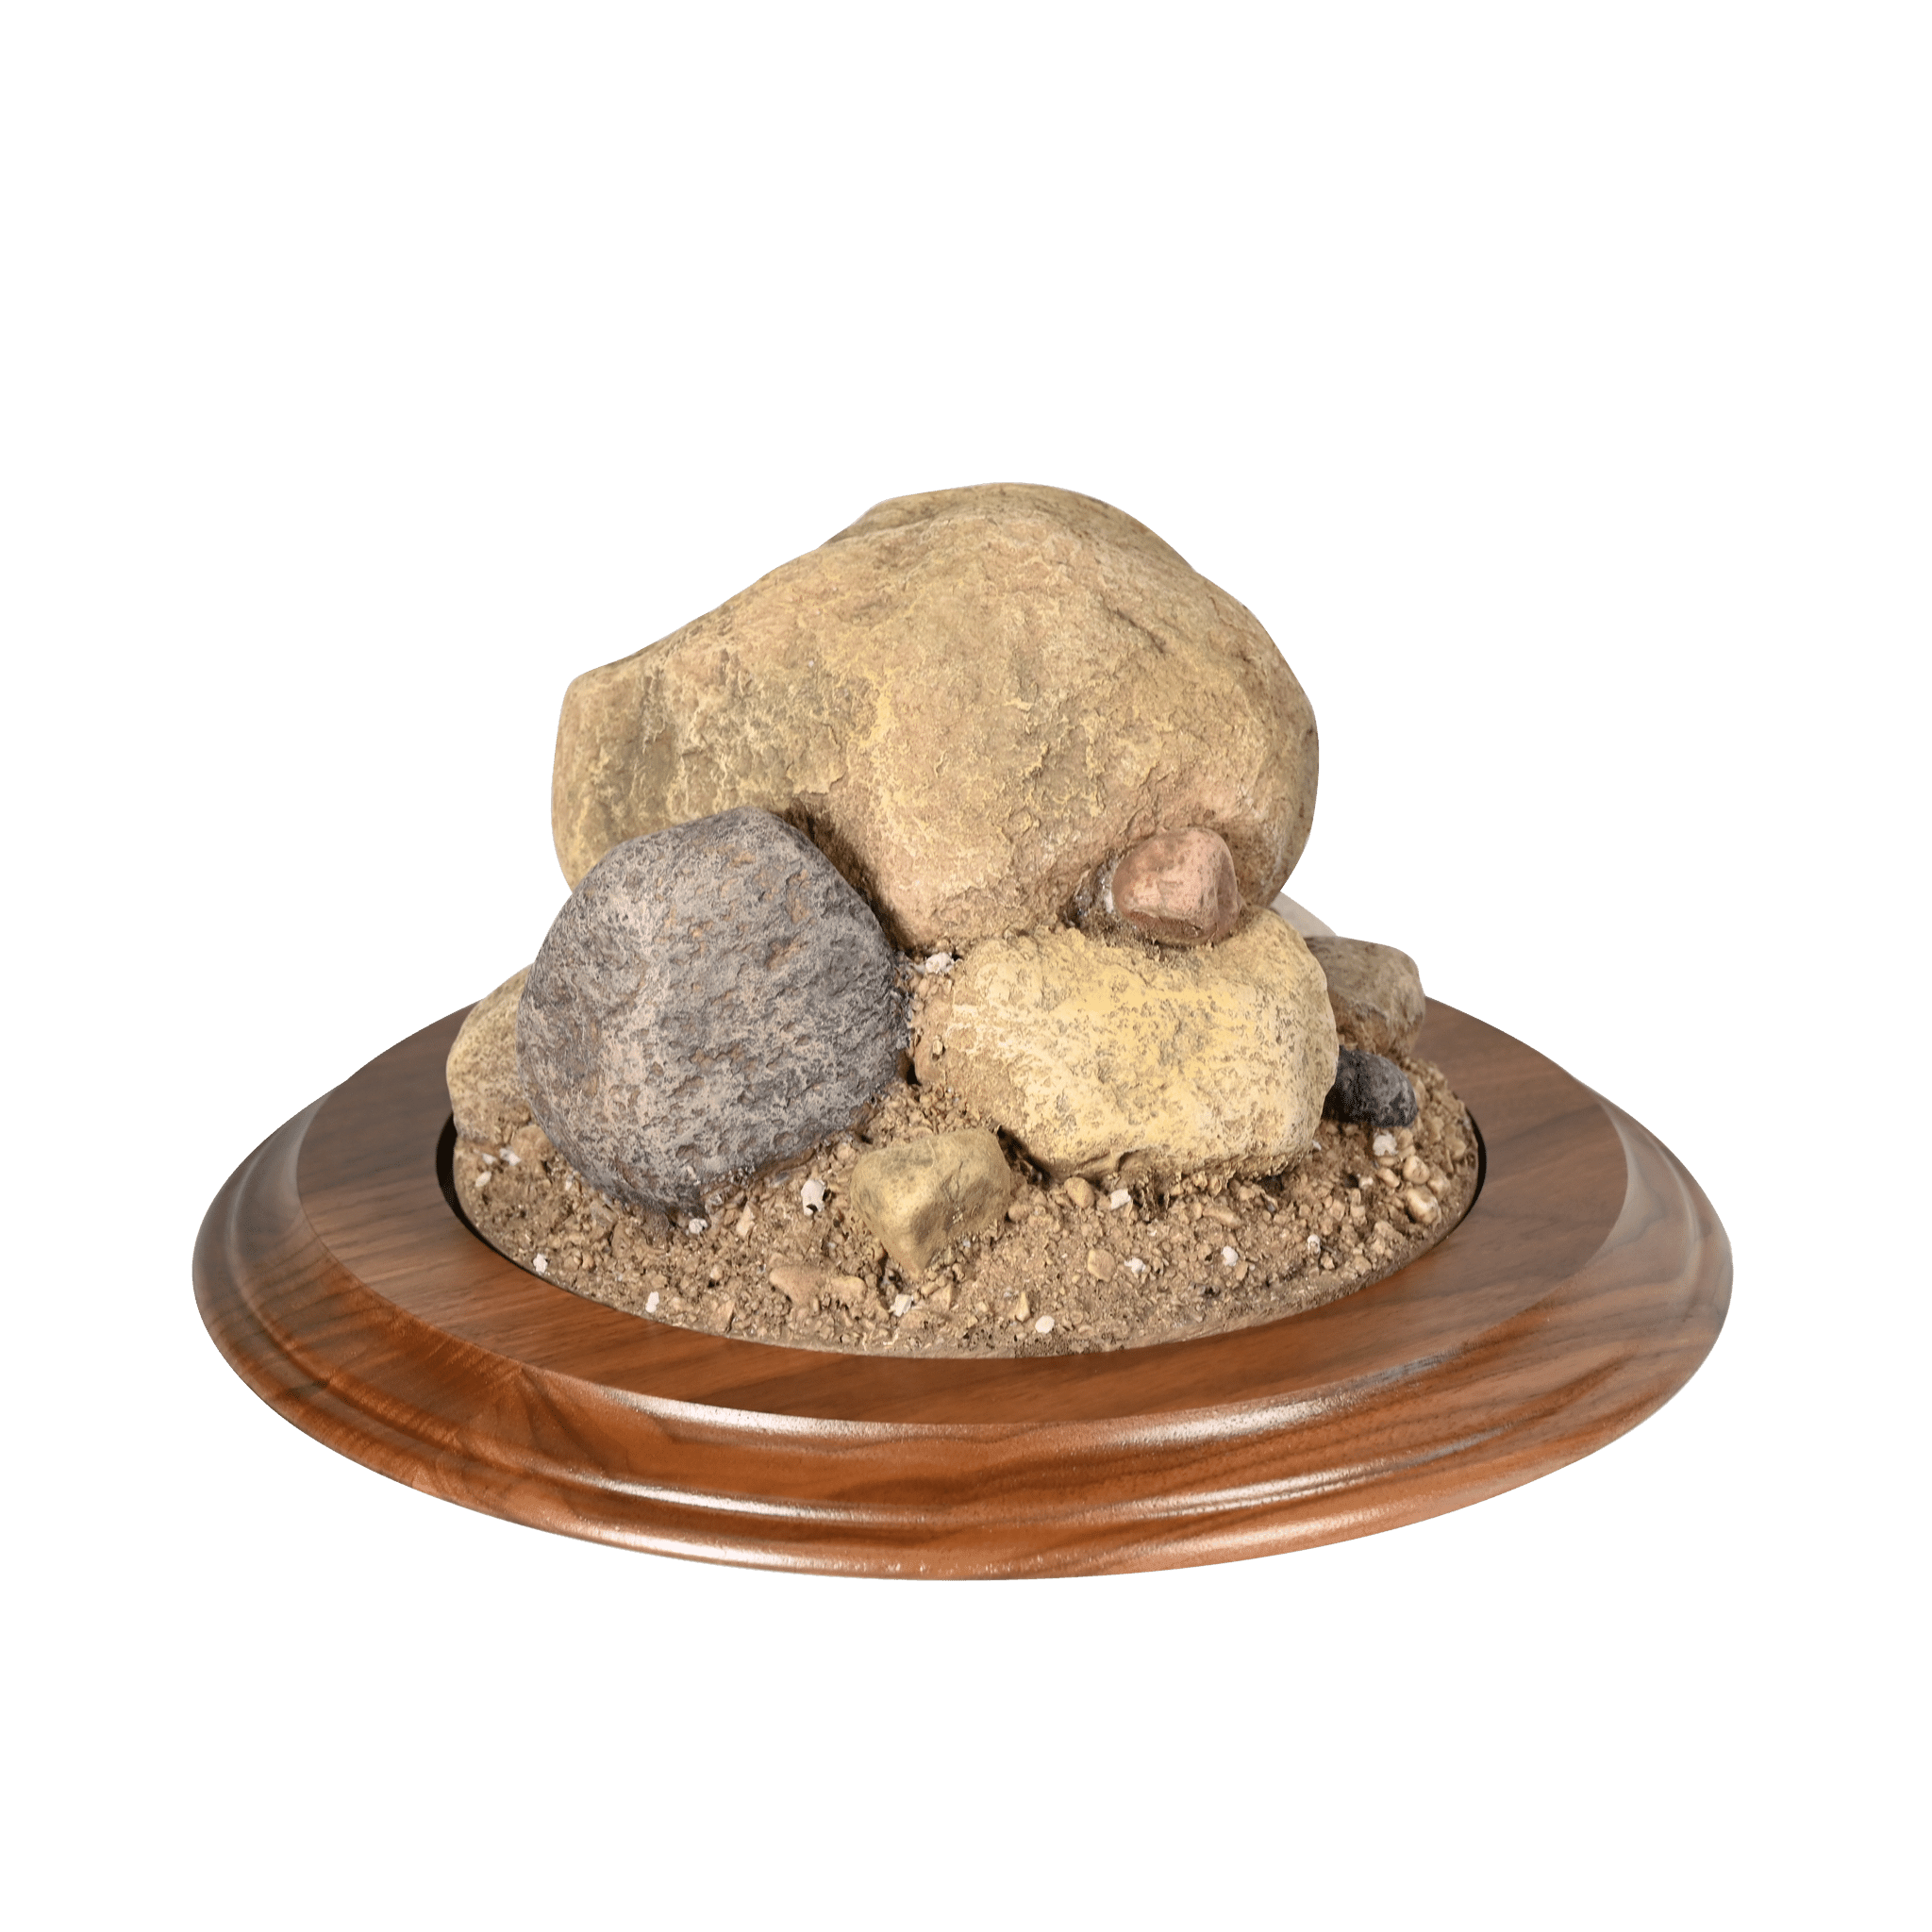 Rock Base (Medium Round) - Matuska Taxidermy Supply Company